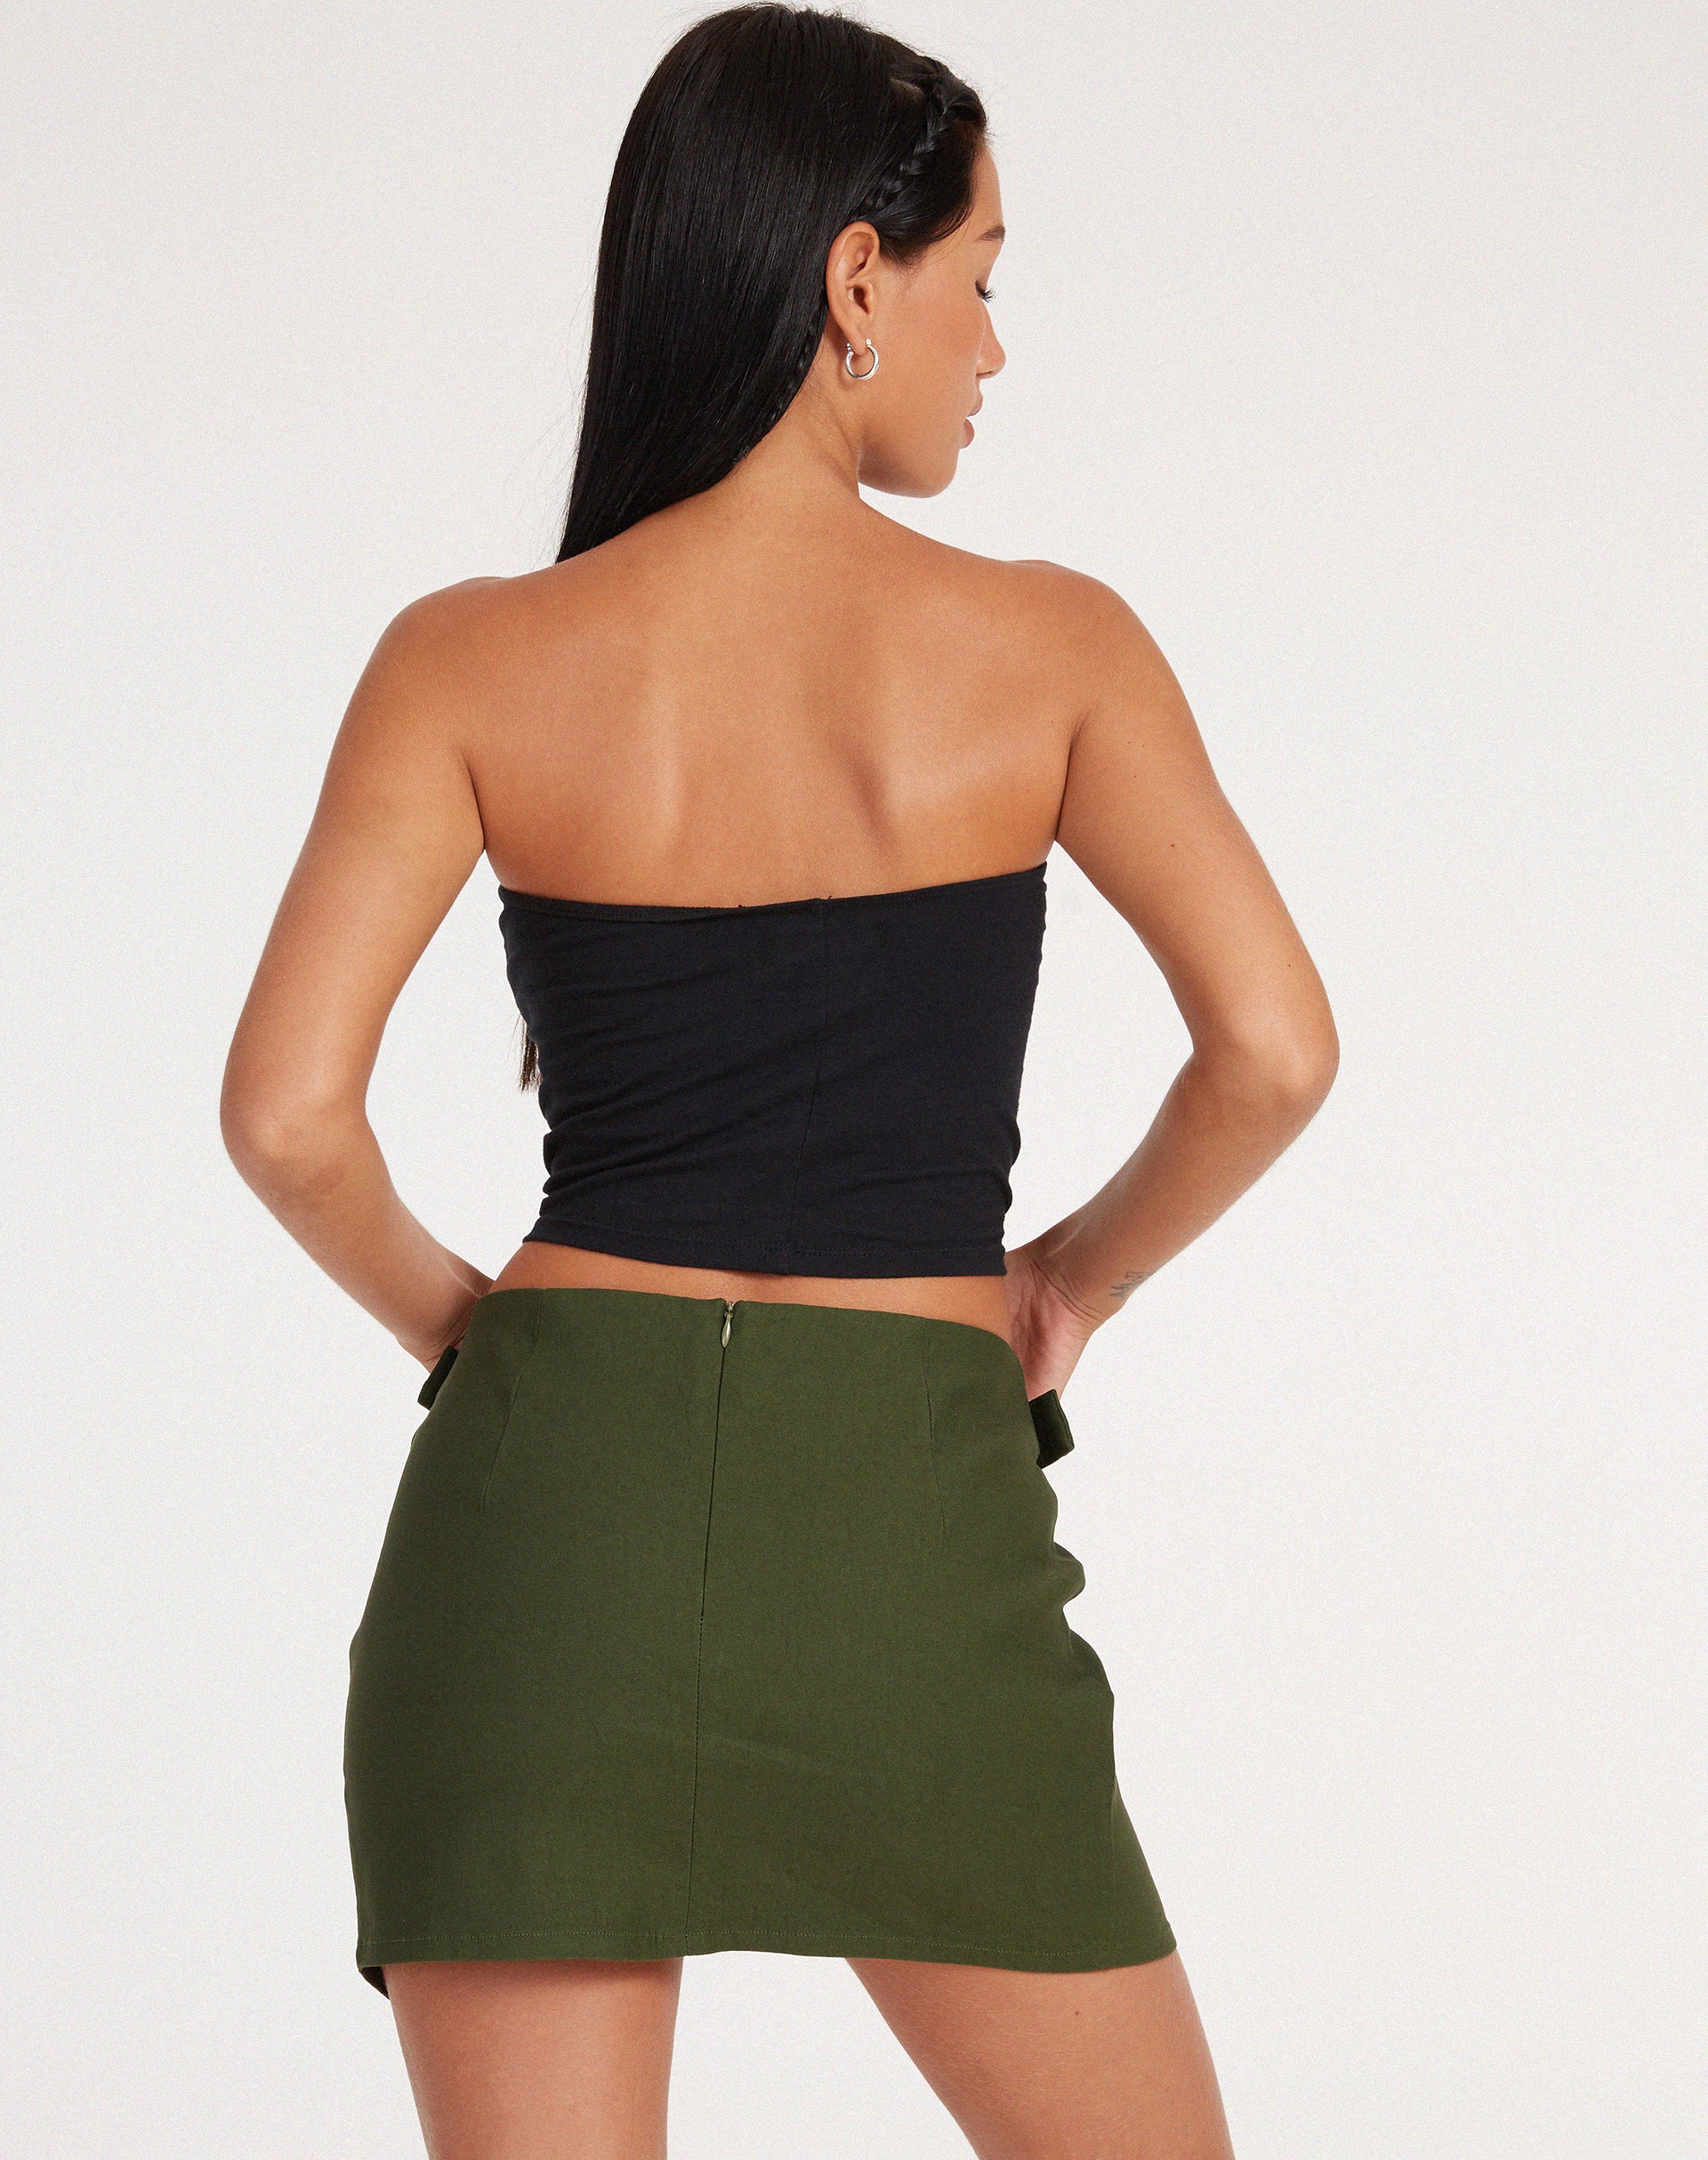 image of Salma Mini Skirt in Olive